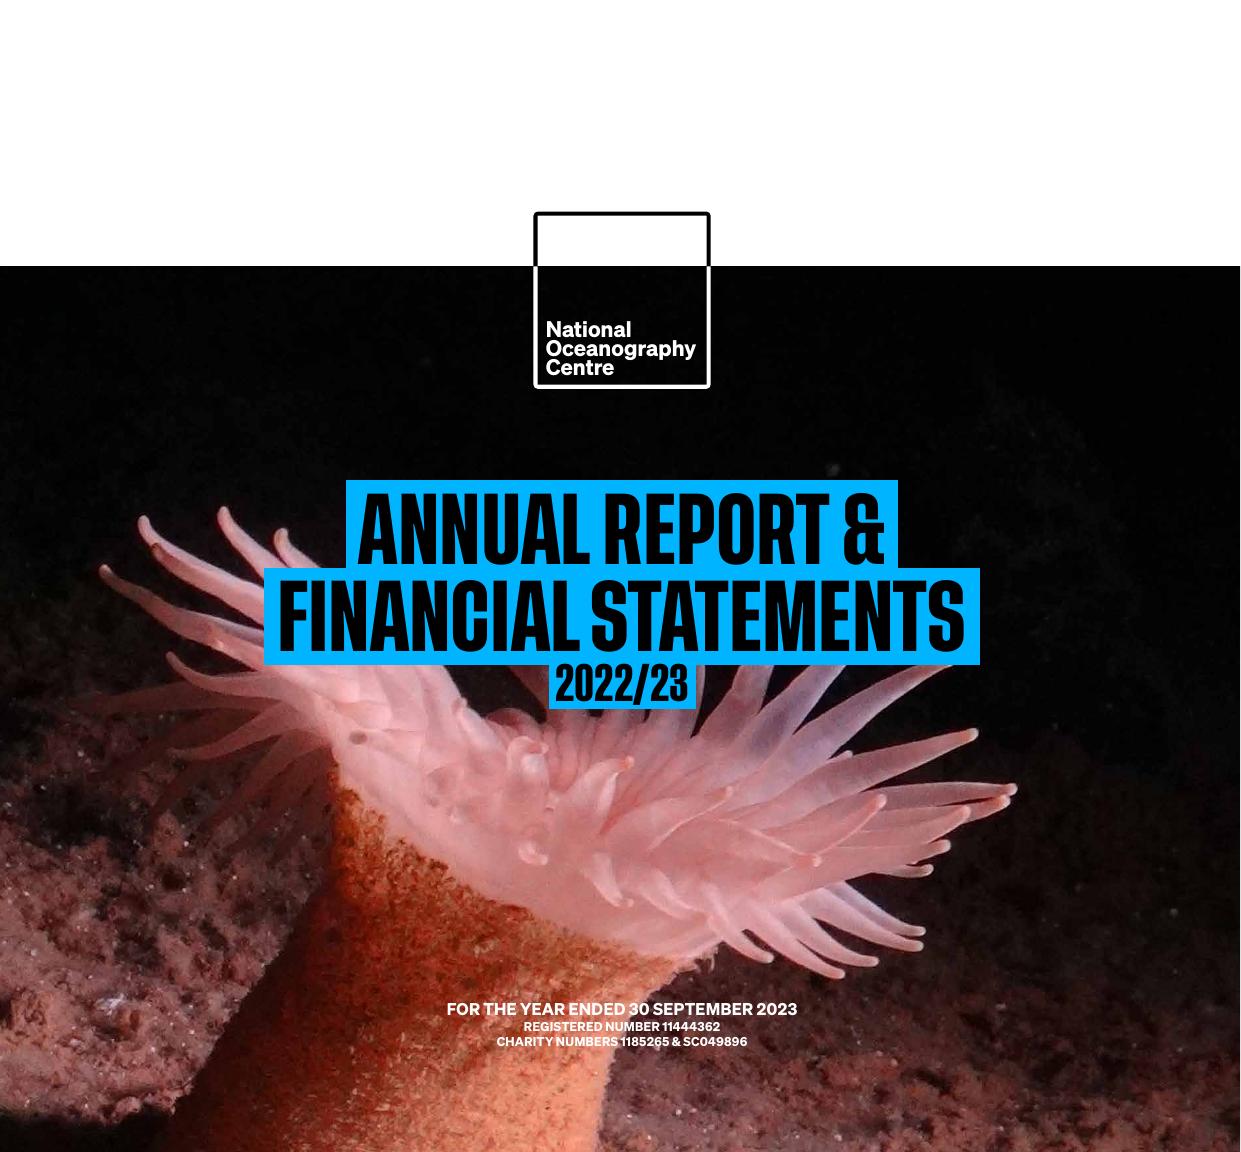 NOC 2023 Annual Report